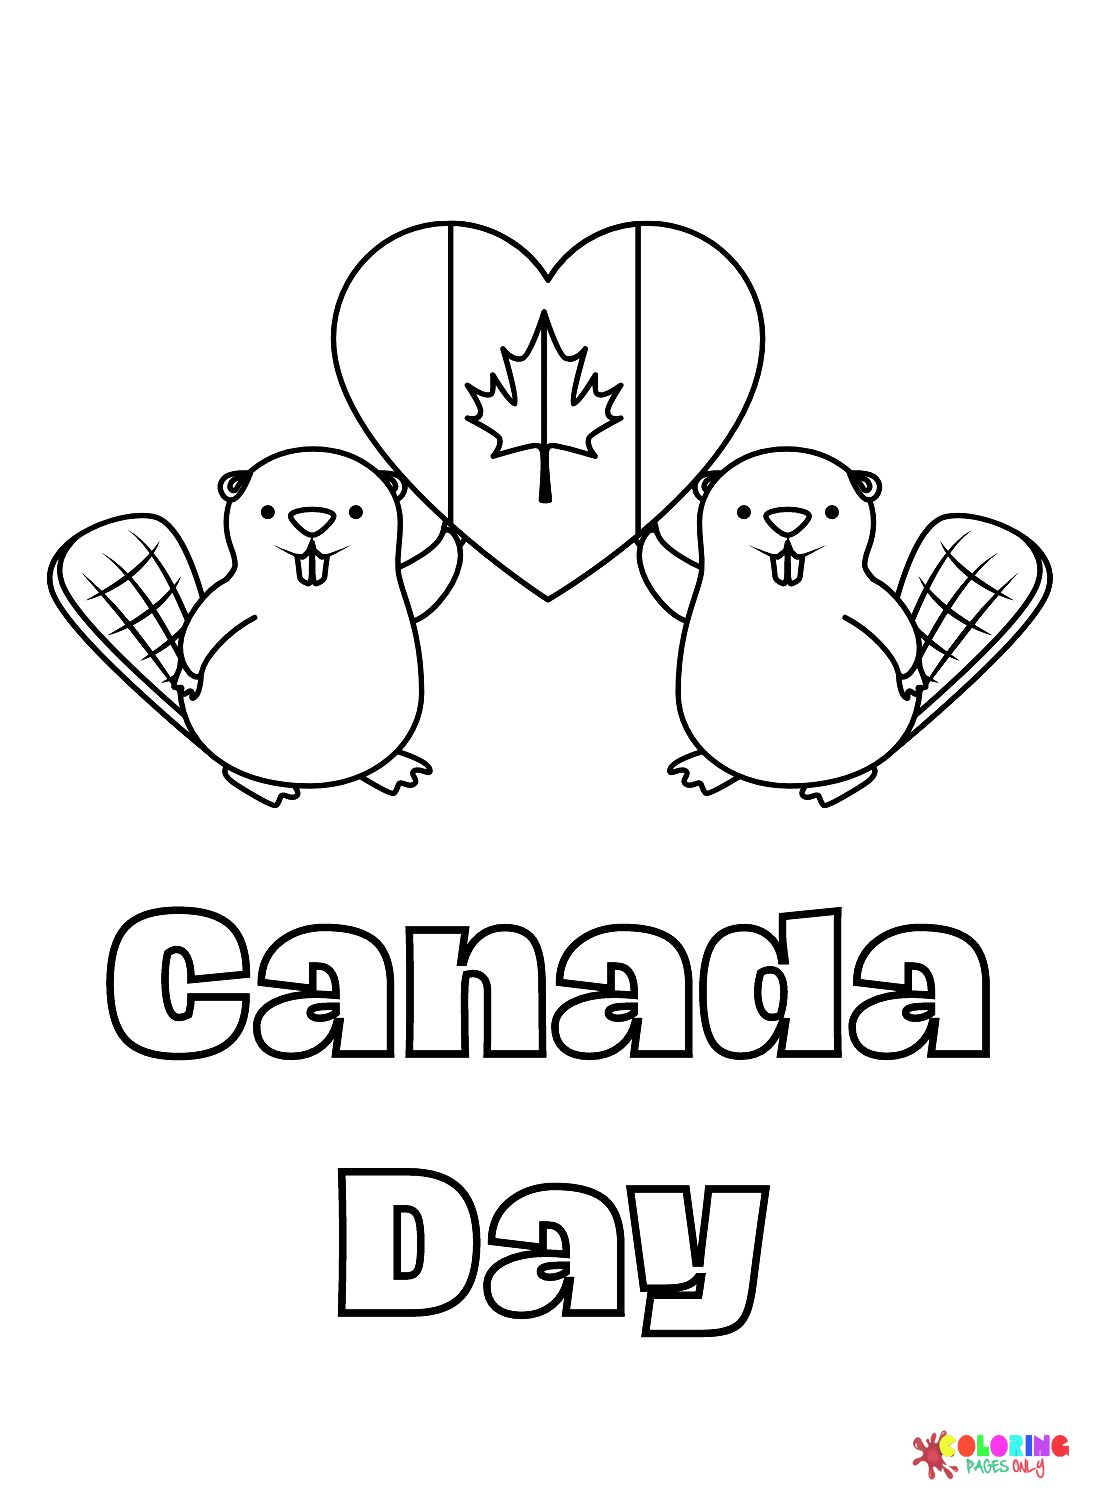 العلم الكندي على شكل قلب وقندس من يوم كندا